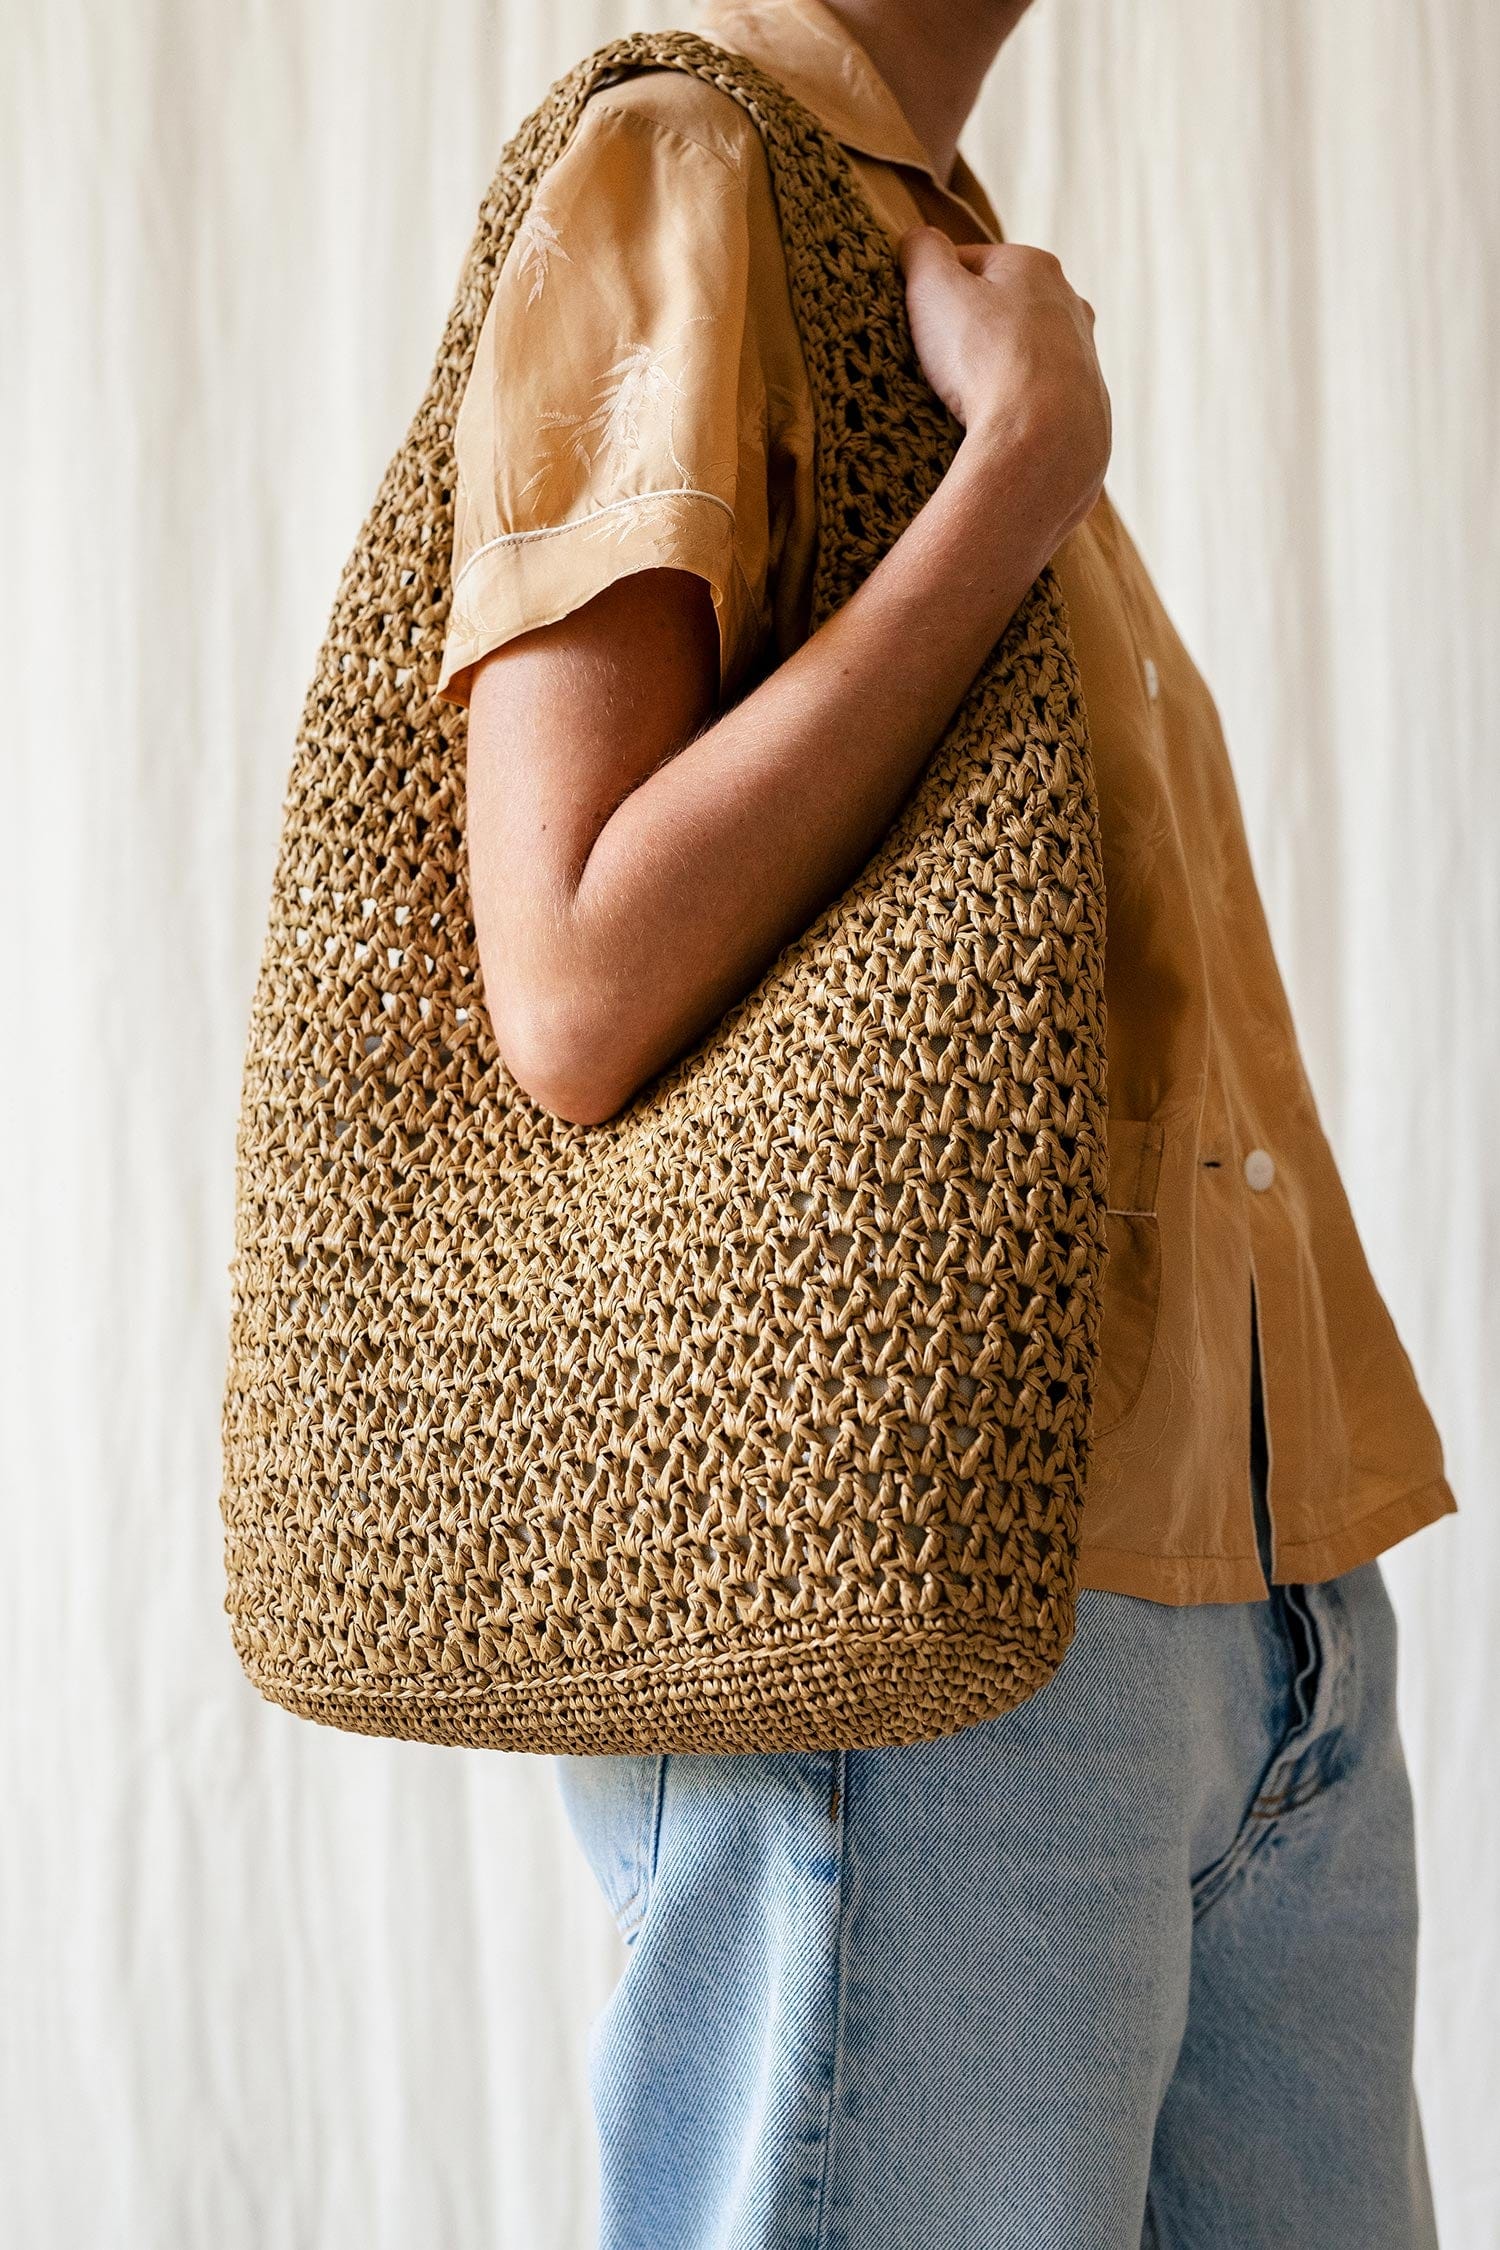 Plexida Crochet Raffia Clutch in Tan, Straw Summer Bag, Raffia